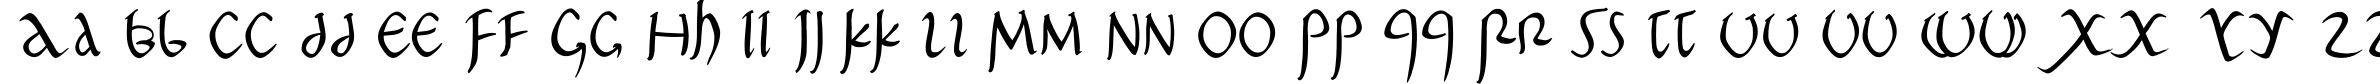 Пример написания английского алфавита шрифтом PompejiPetit